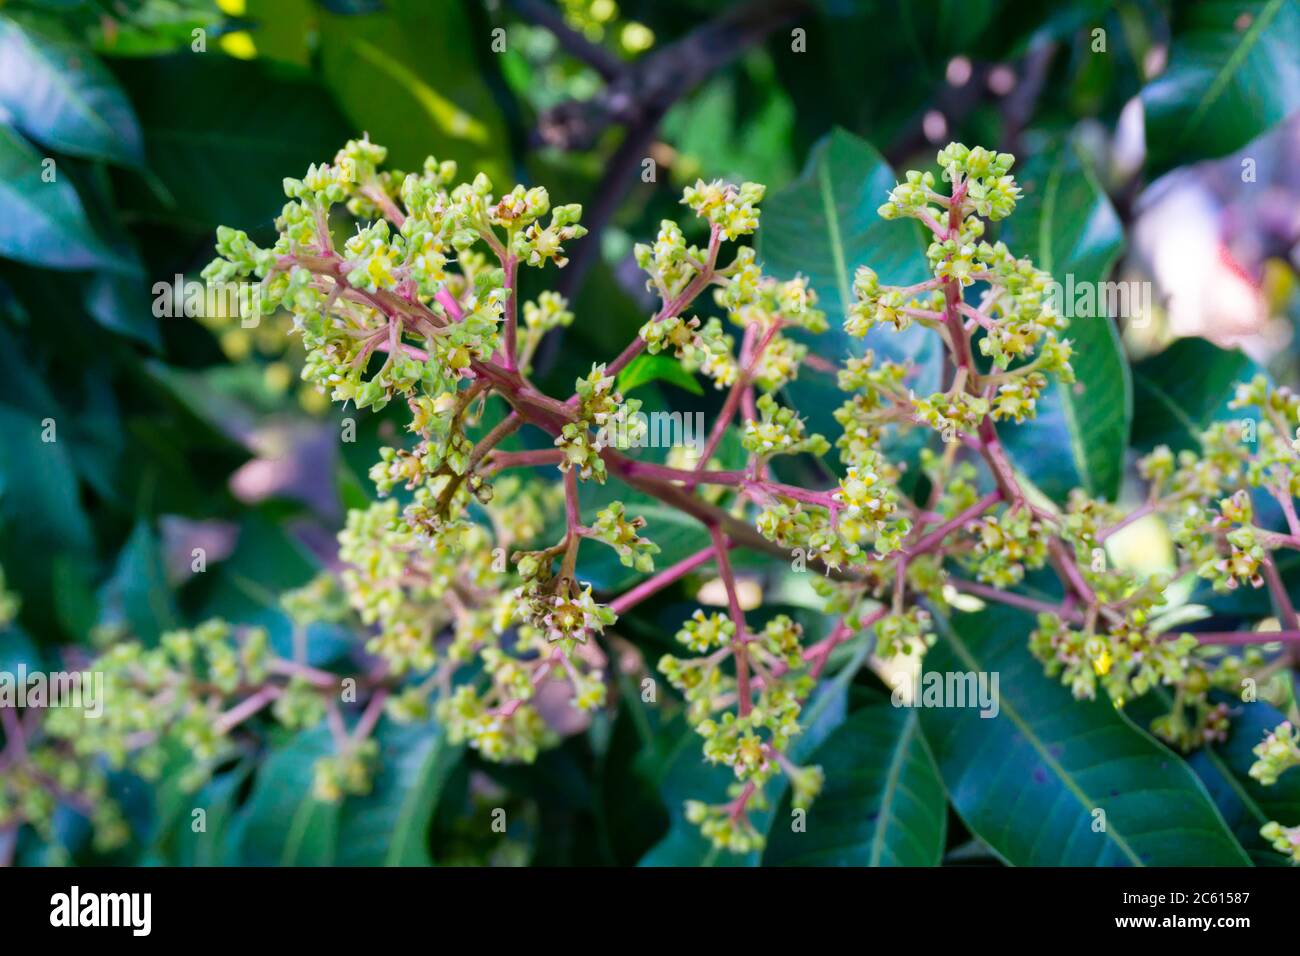 Mangifera indica comunemente noto come mango. Un colpo di albero portarotelli con piccoli manghi e i suoi fiori. Foto Stock